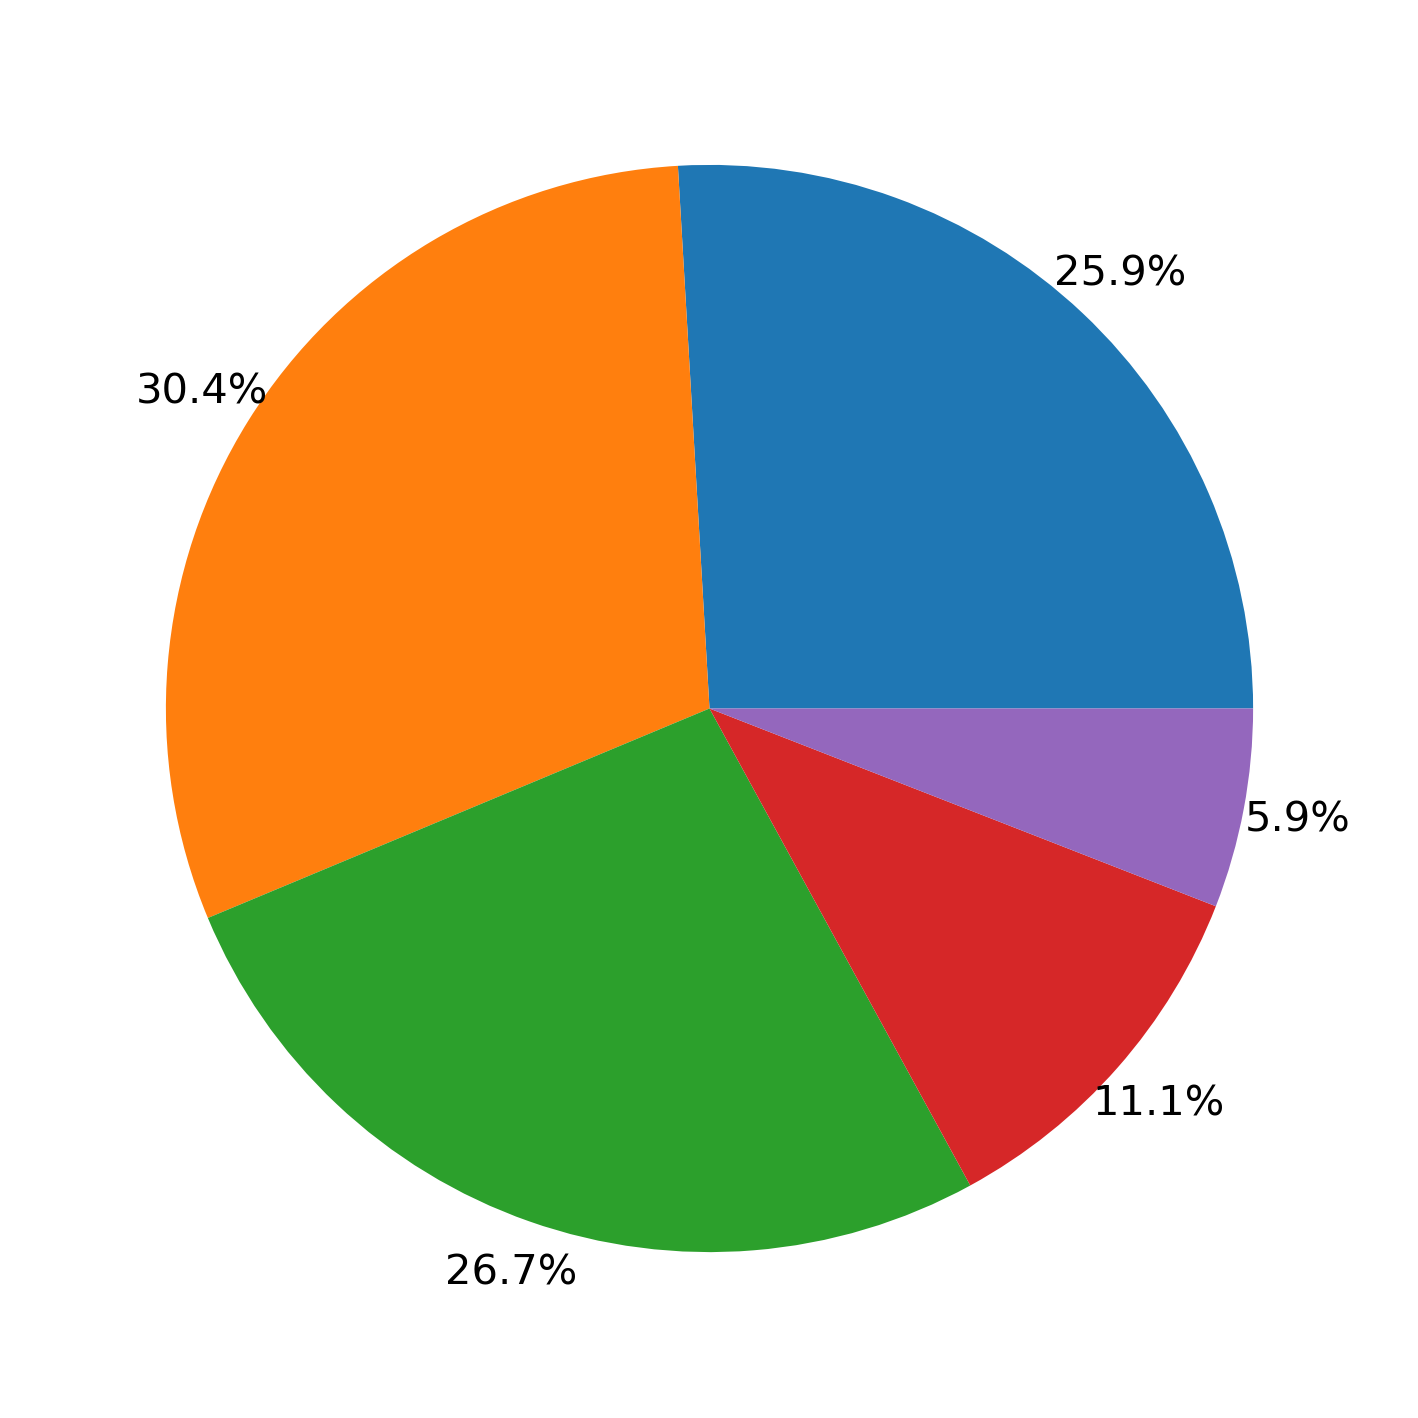 gráfico de pizza desenhado com matplotlib com a porcentagem que cada fatia ocupa na respectiva fatia.